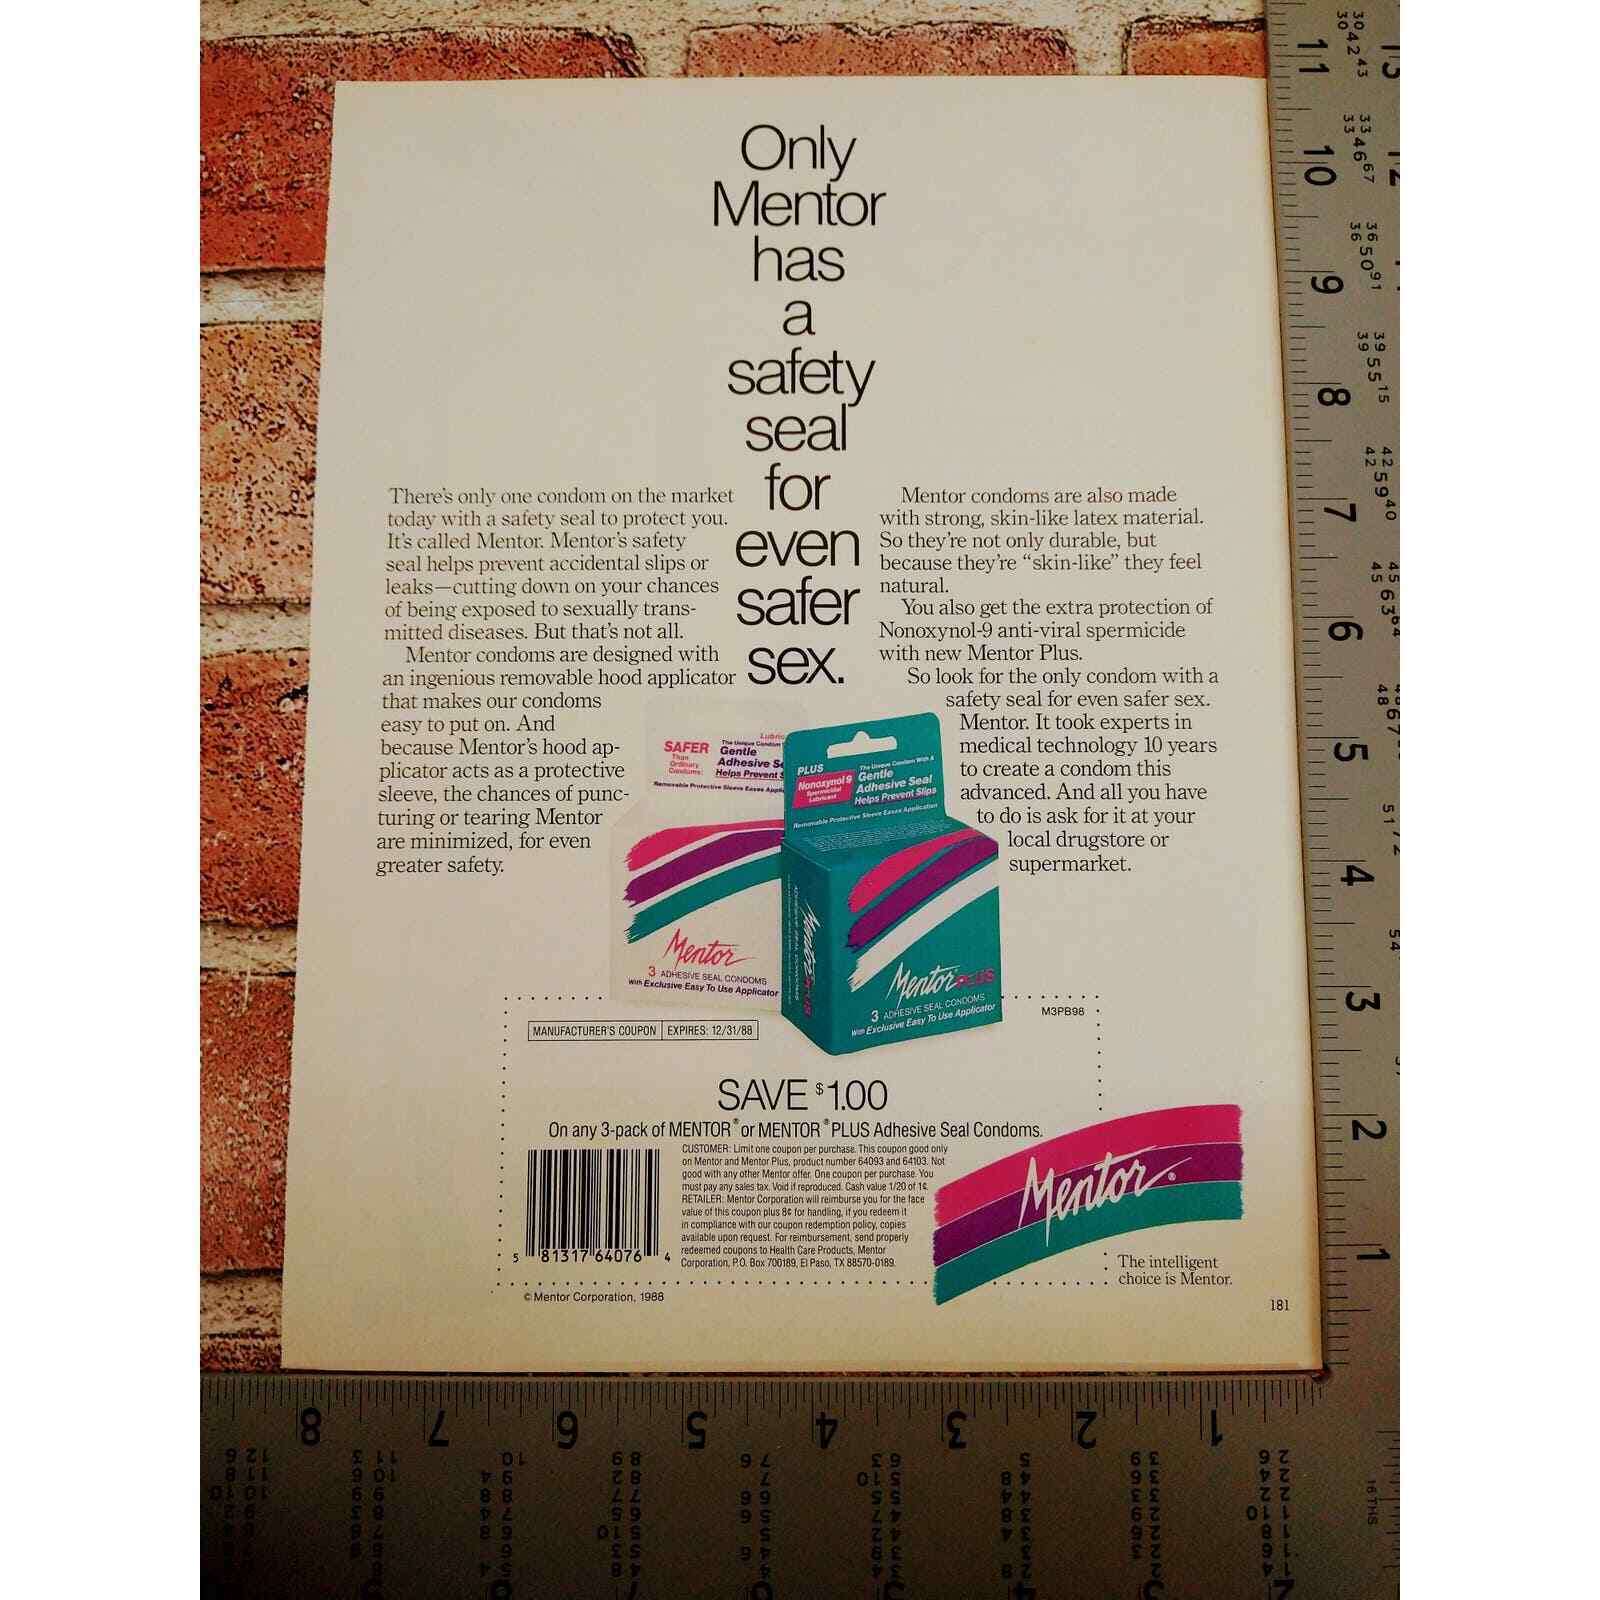 Mentor - Safety Seal for Even Safer Sex - Orig 1988 Vtg Contraceptives PRINT AD